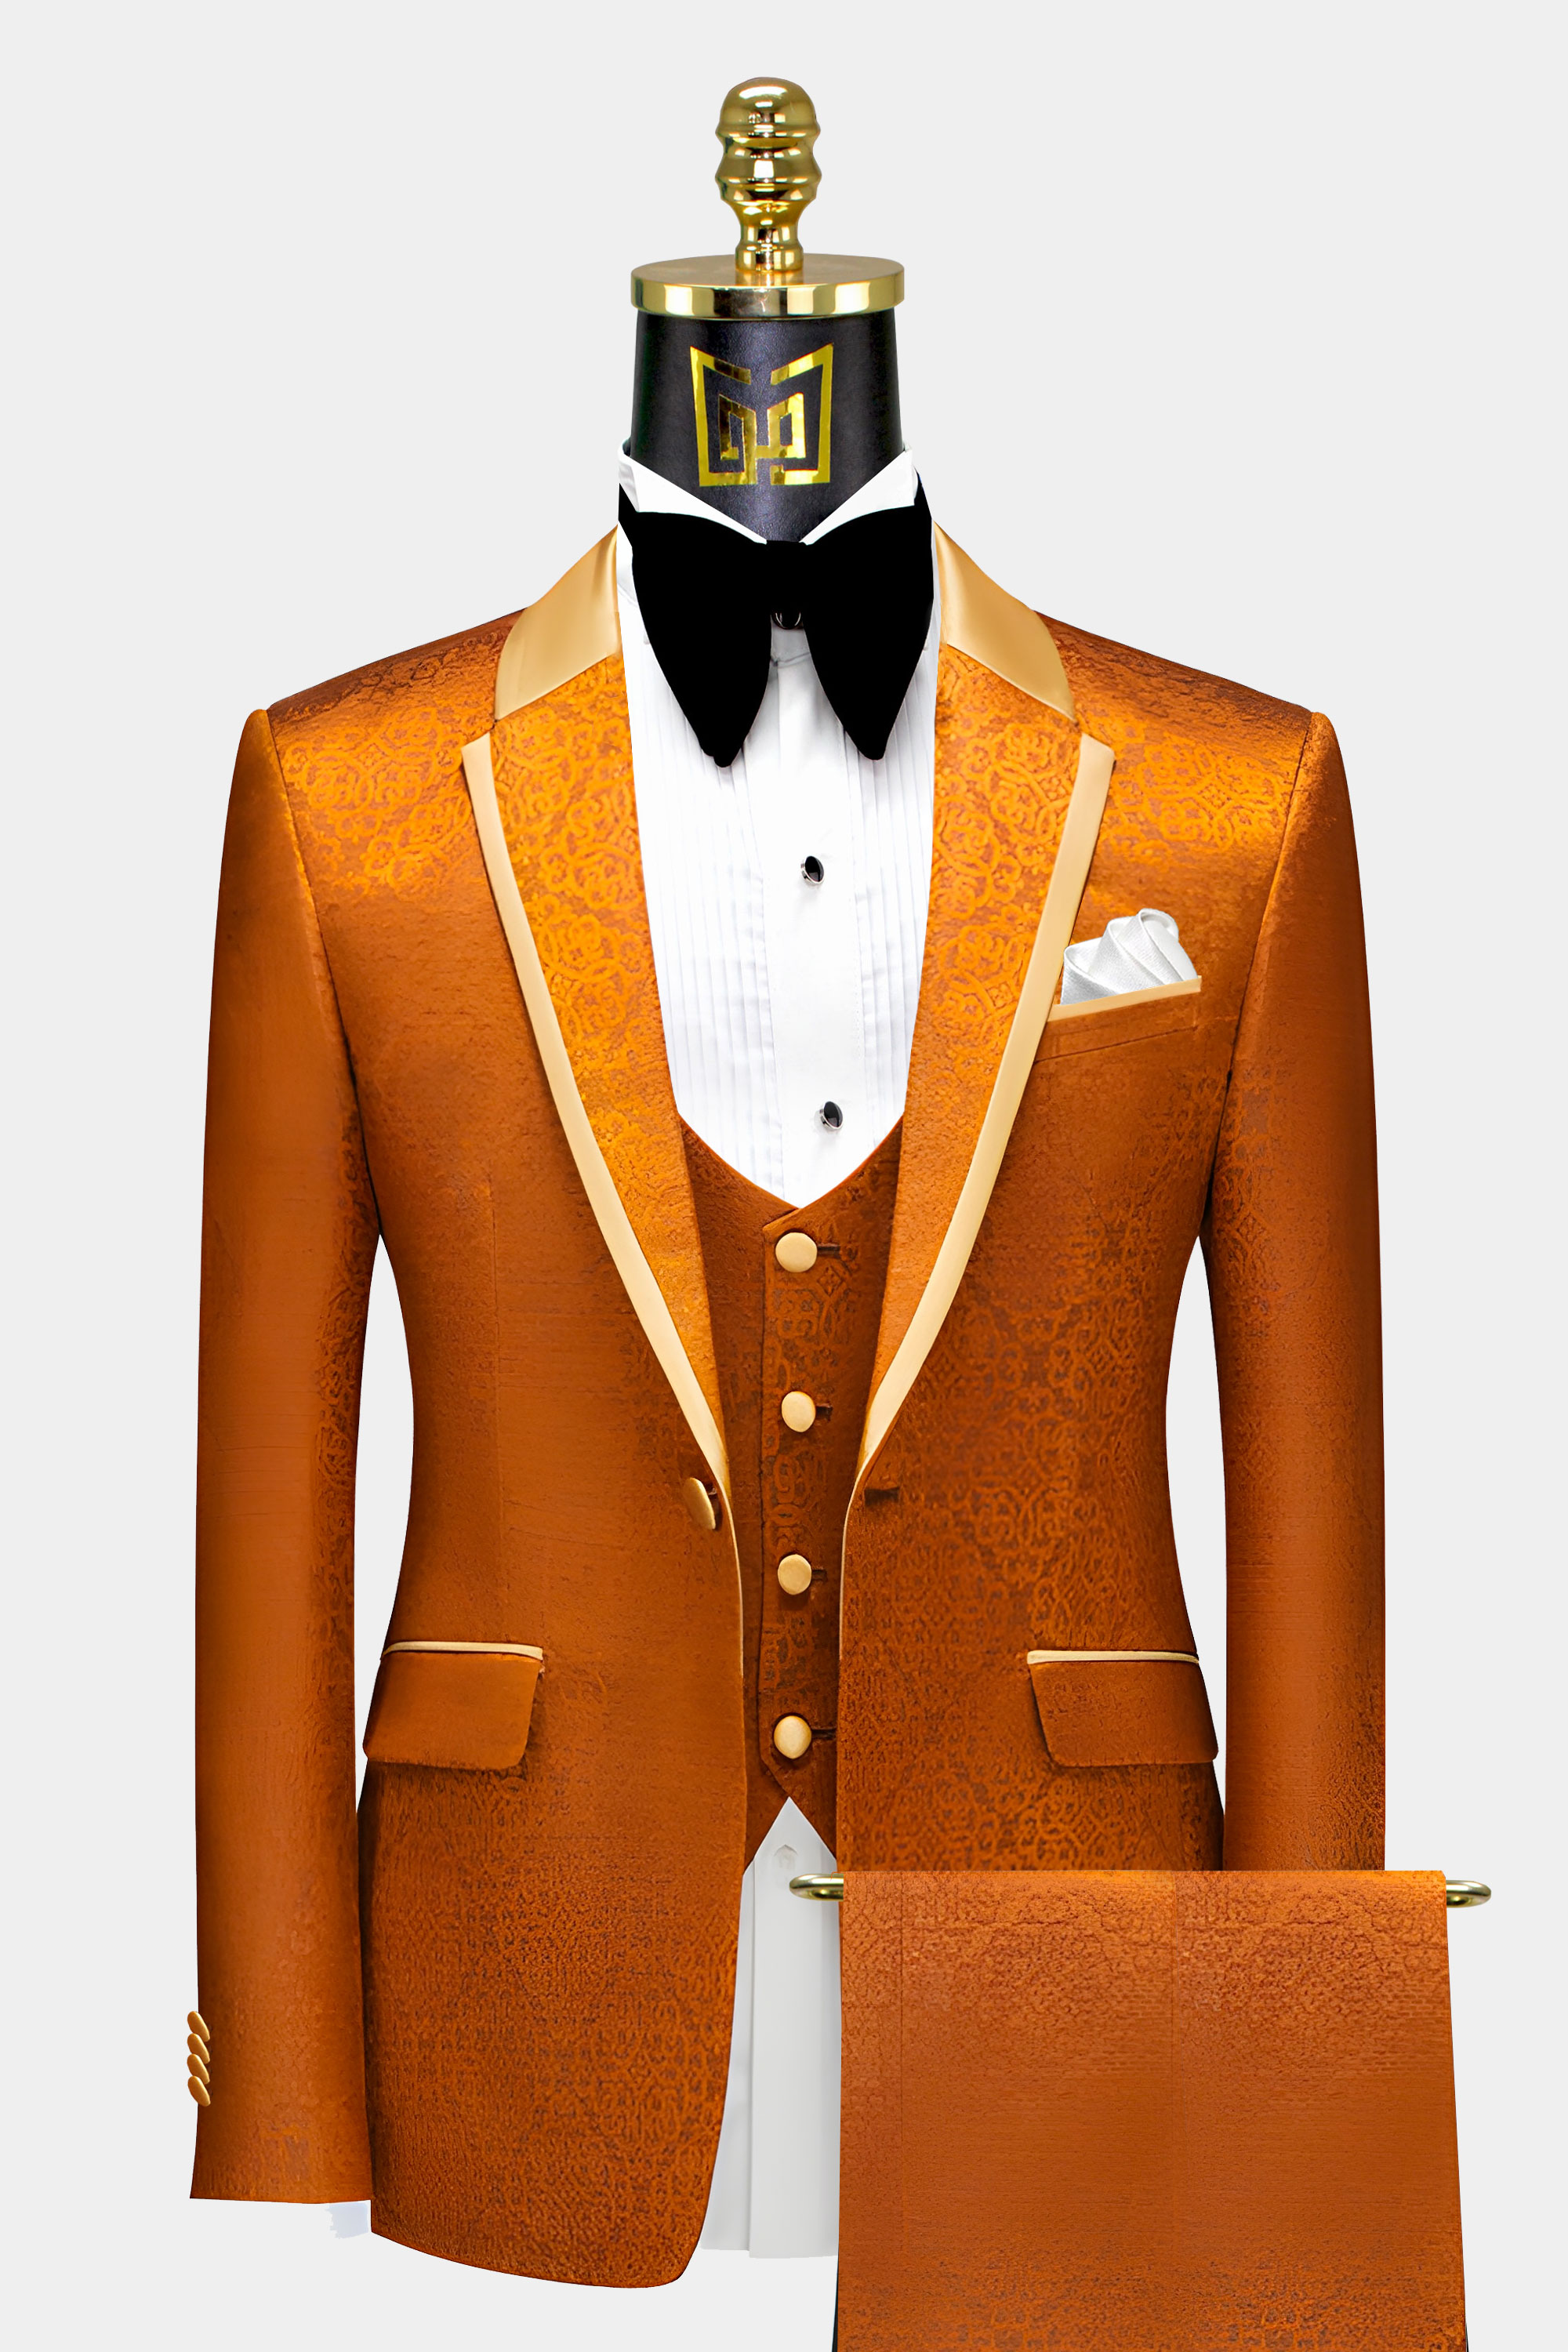 Orange-Tuxedo-Suit-Wedding-Groom-Suit-from-Gentlemansguru.com